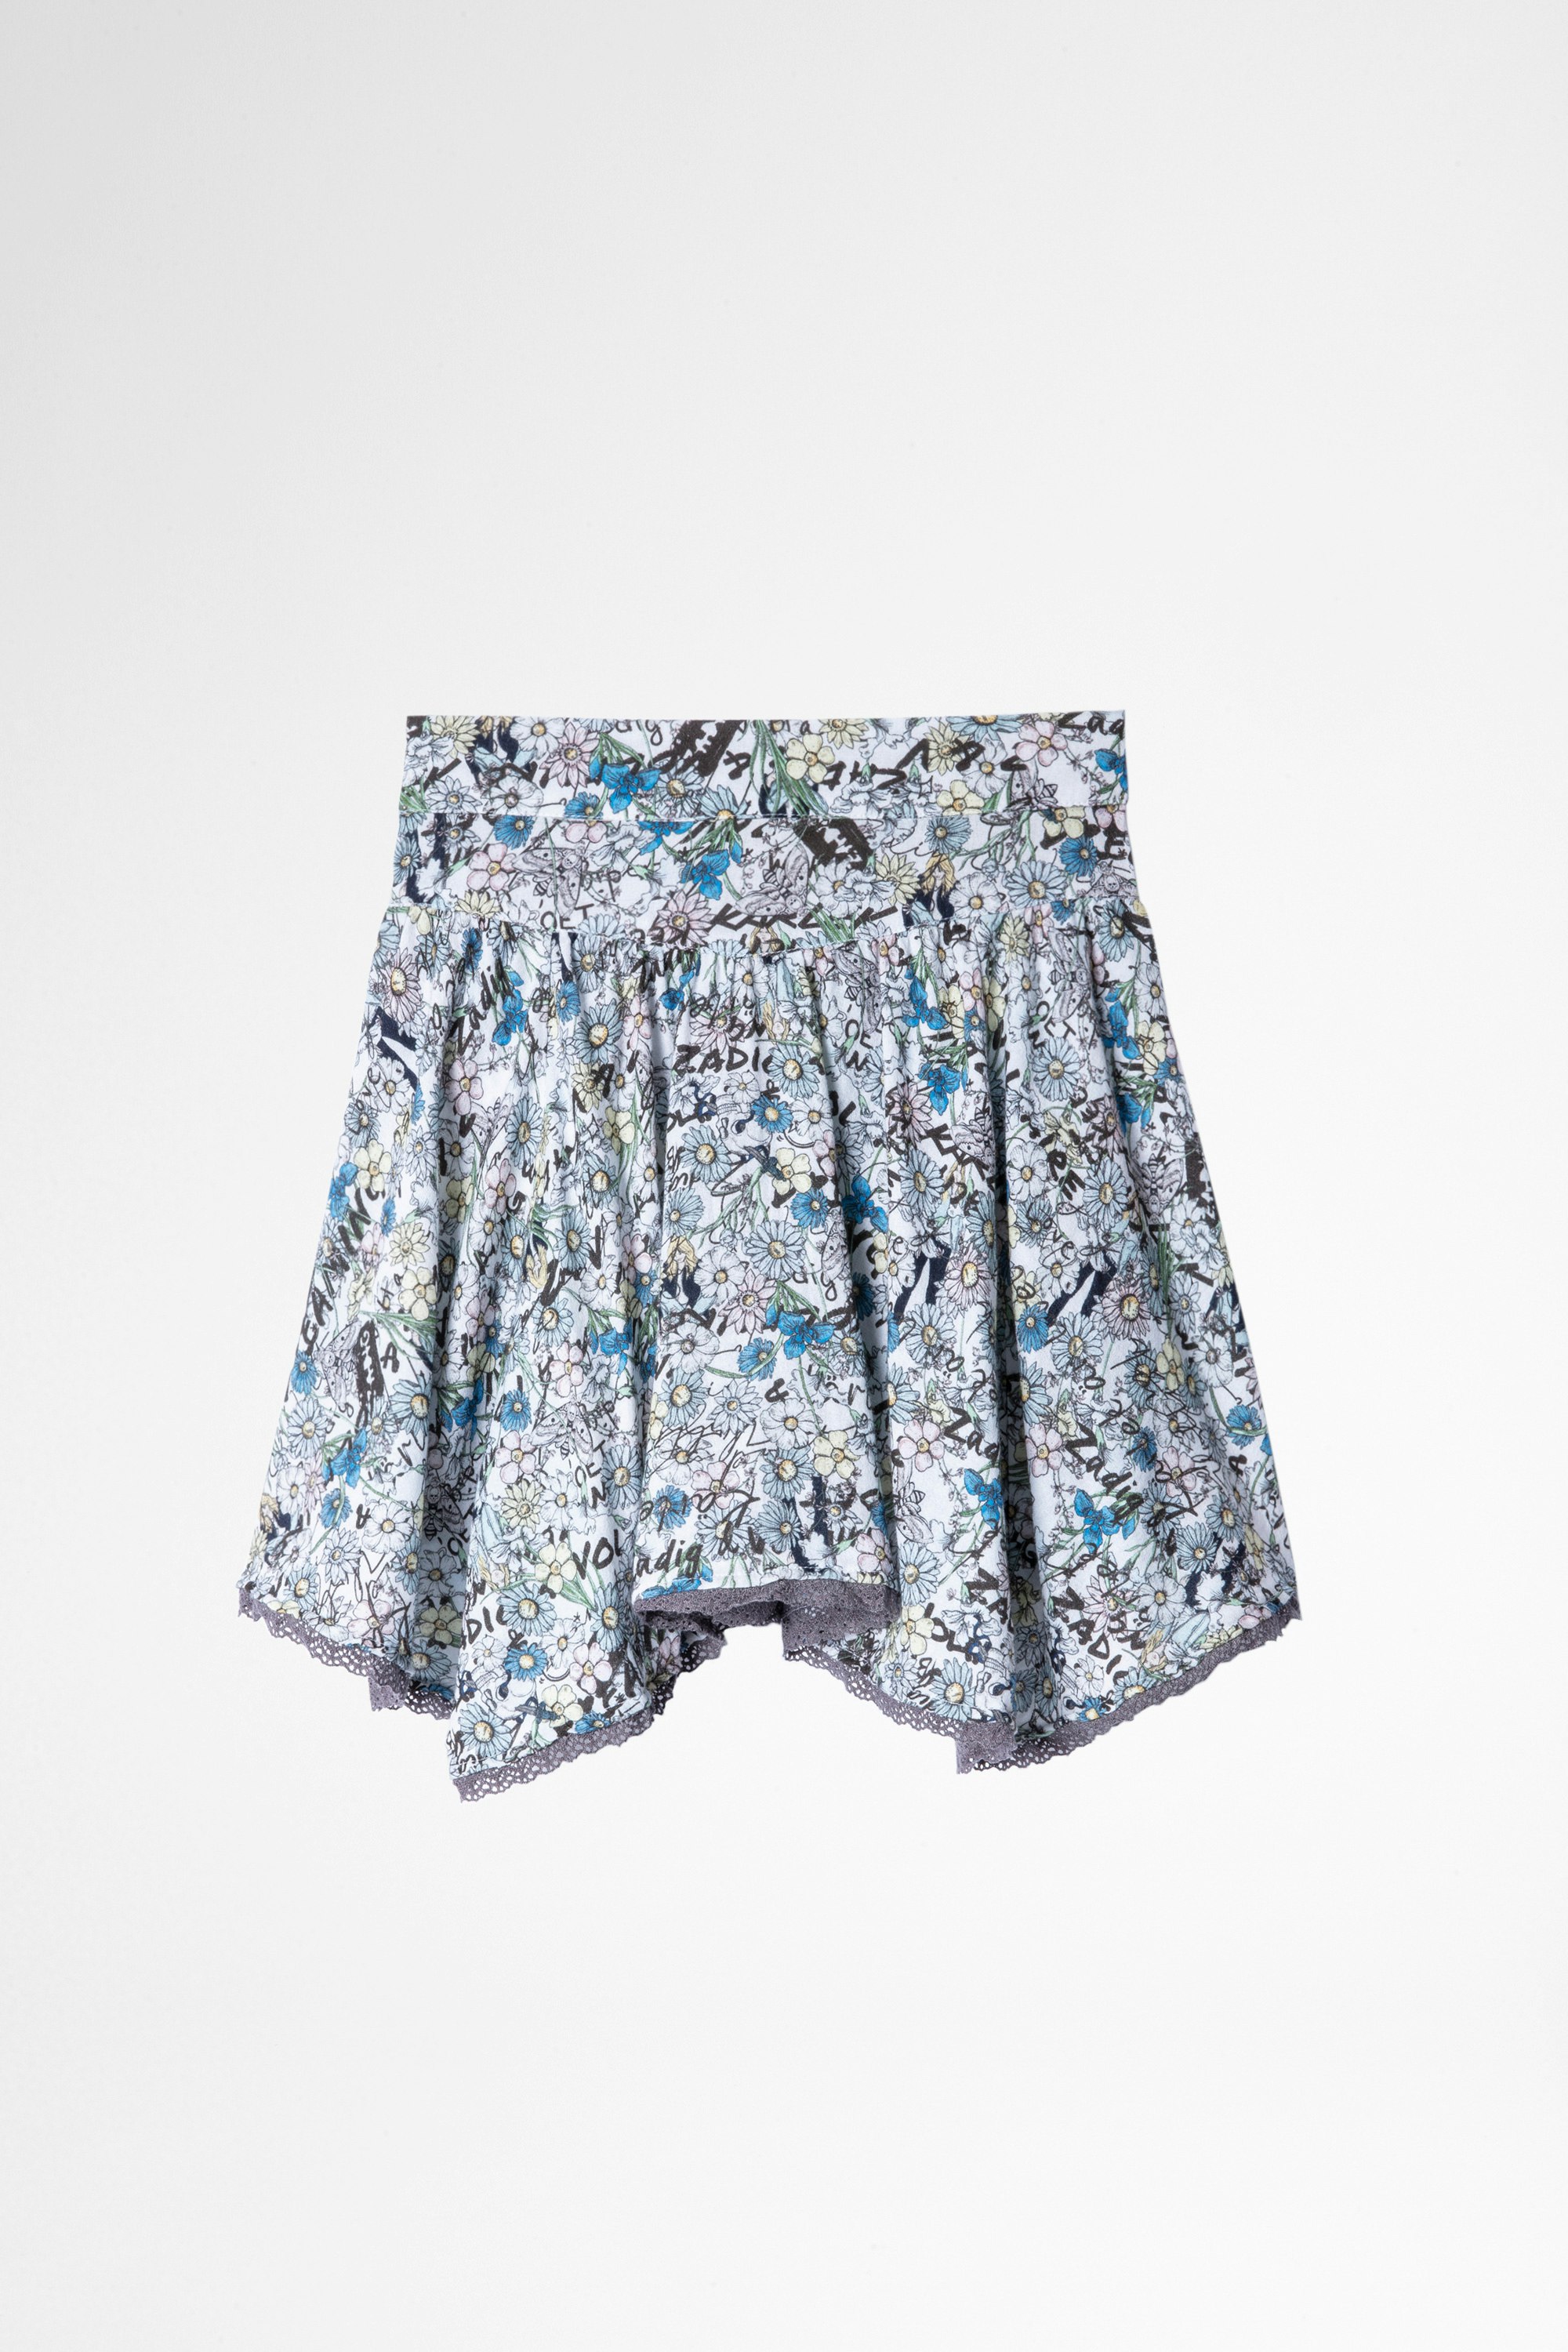 Alexa Children's Skirt Children's short skirt in sky blue